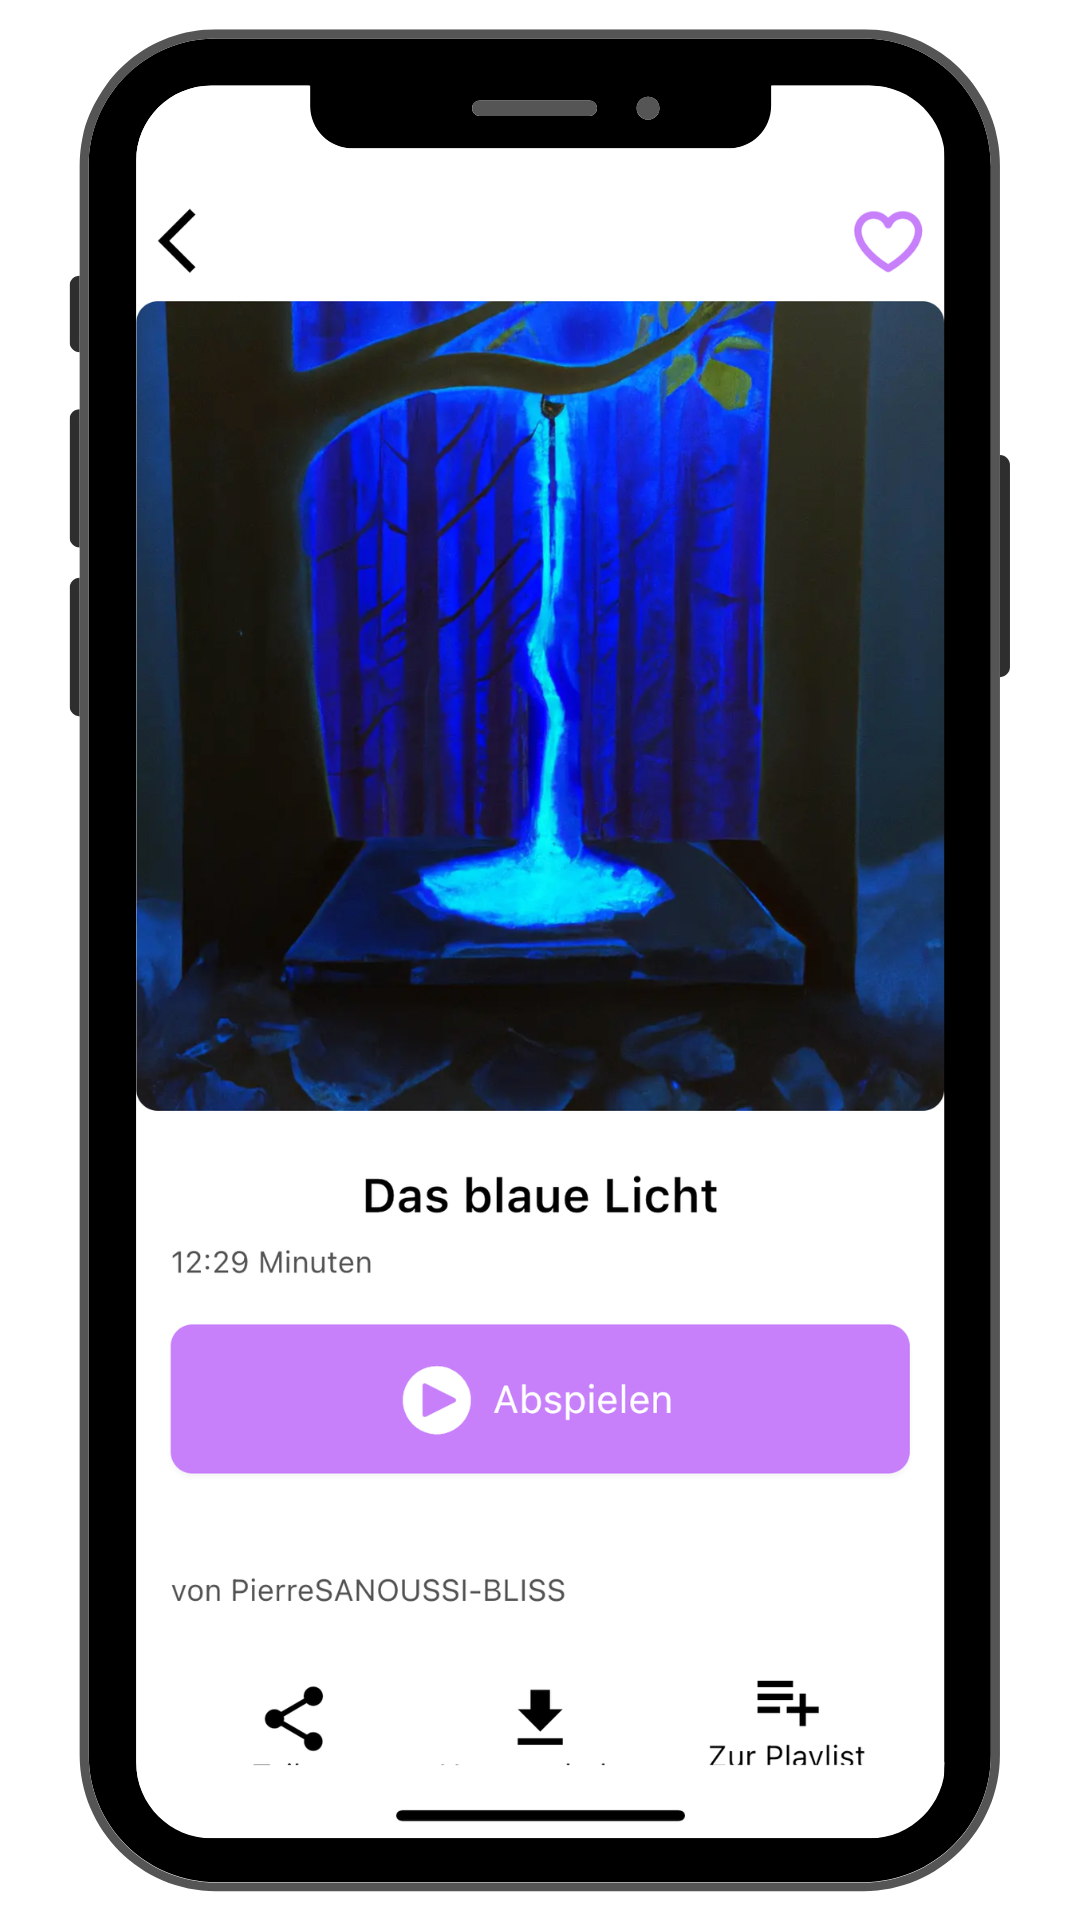 Märchenapp, das blaue Licht, App Anzeige